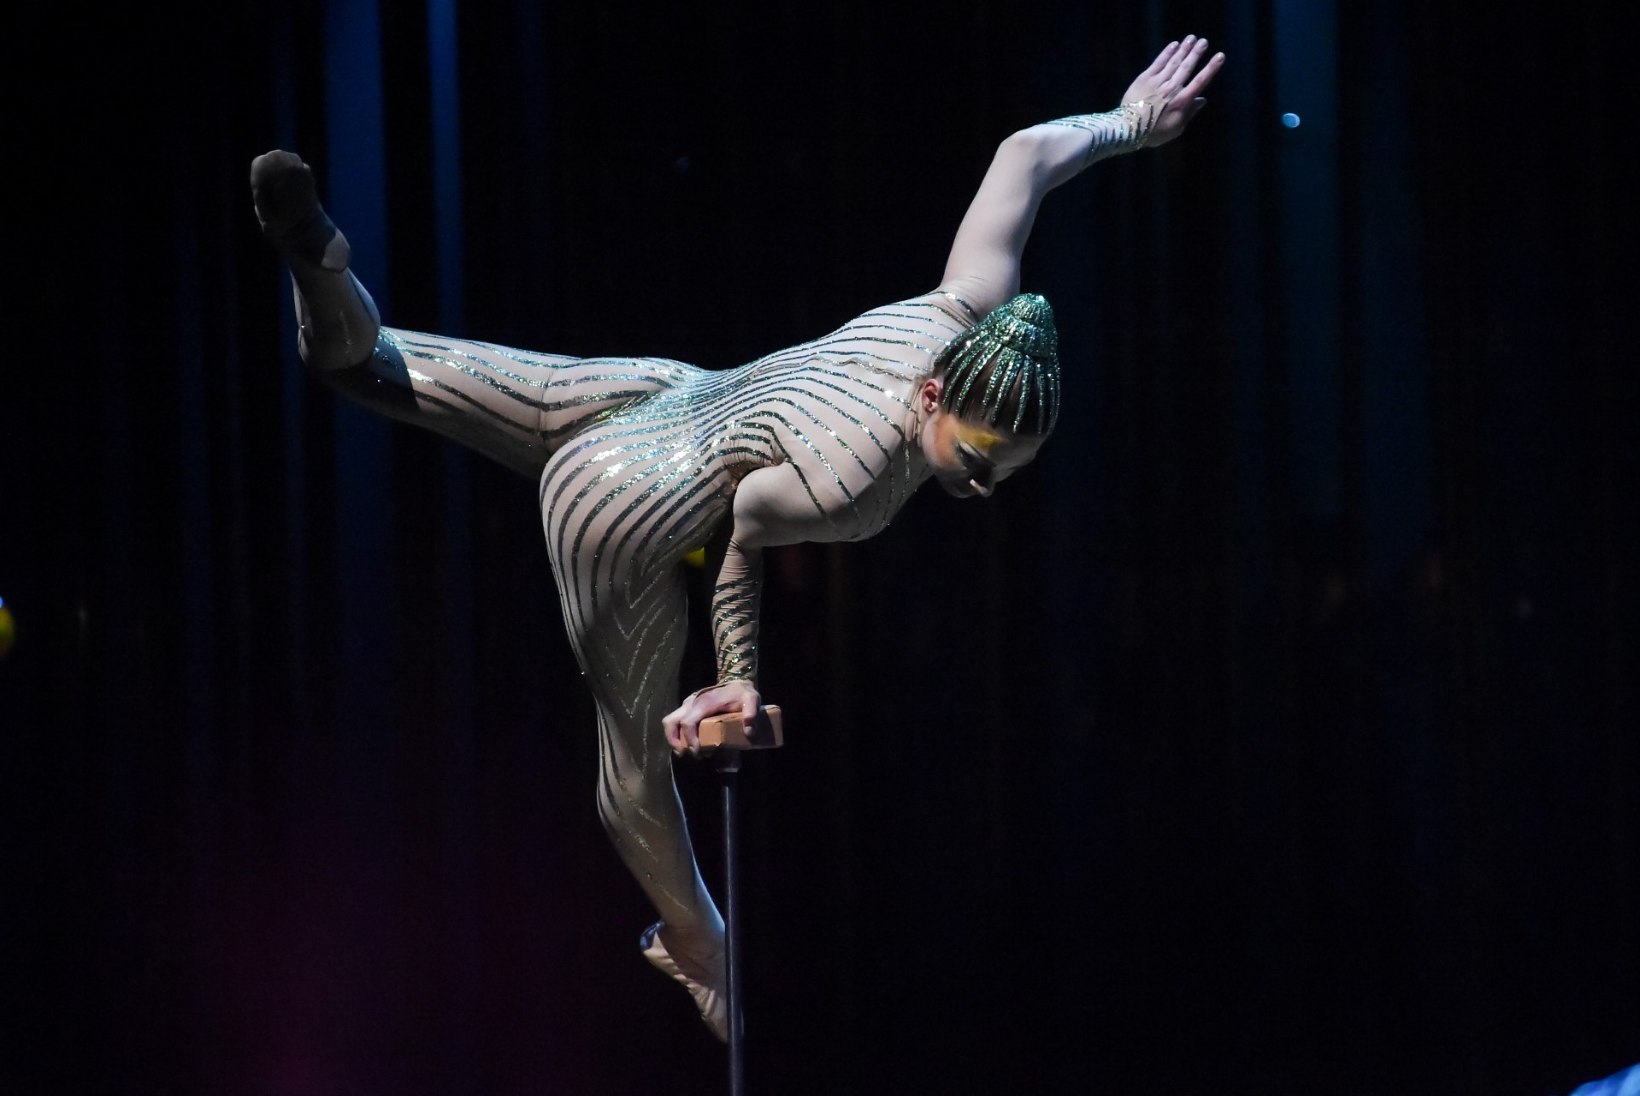 ÕHTULEHE VIDEO | Cirque du Soleil' meeskond veab endaga kaasas üle 2000 kostüümielemendi